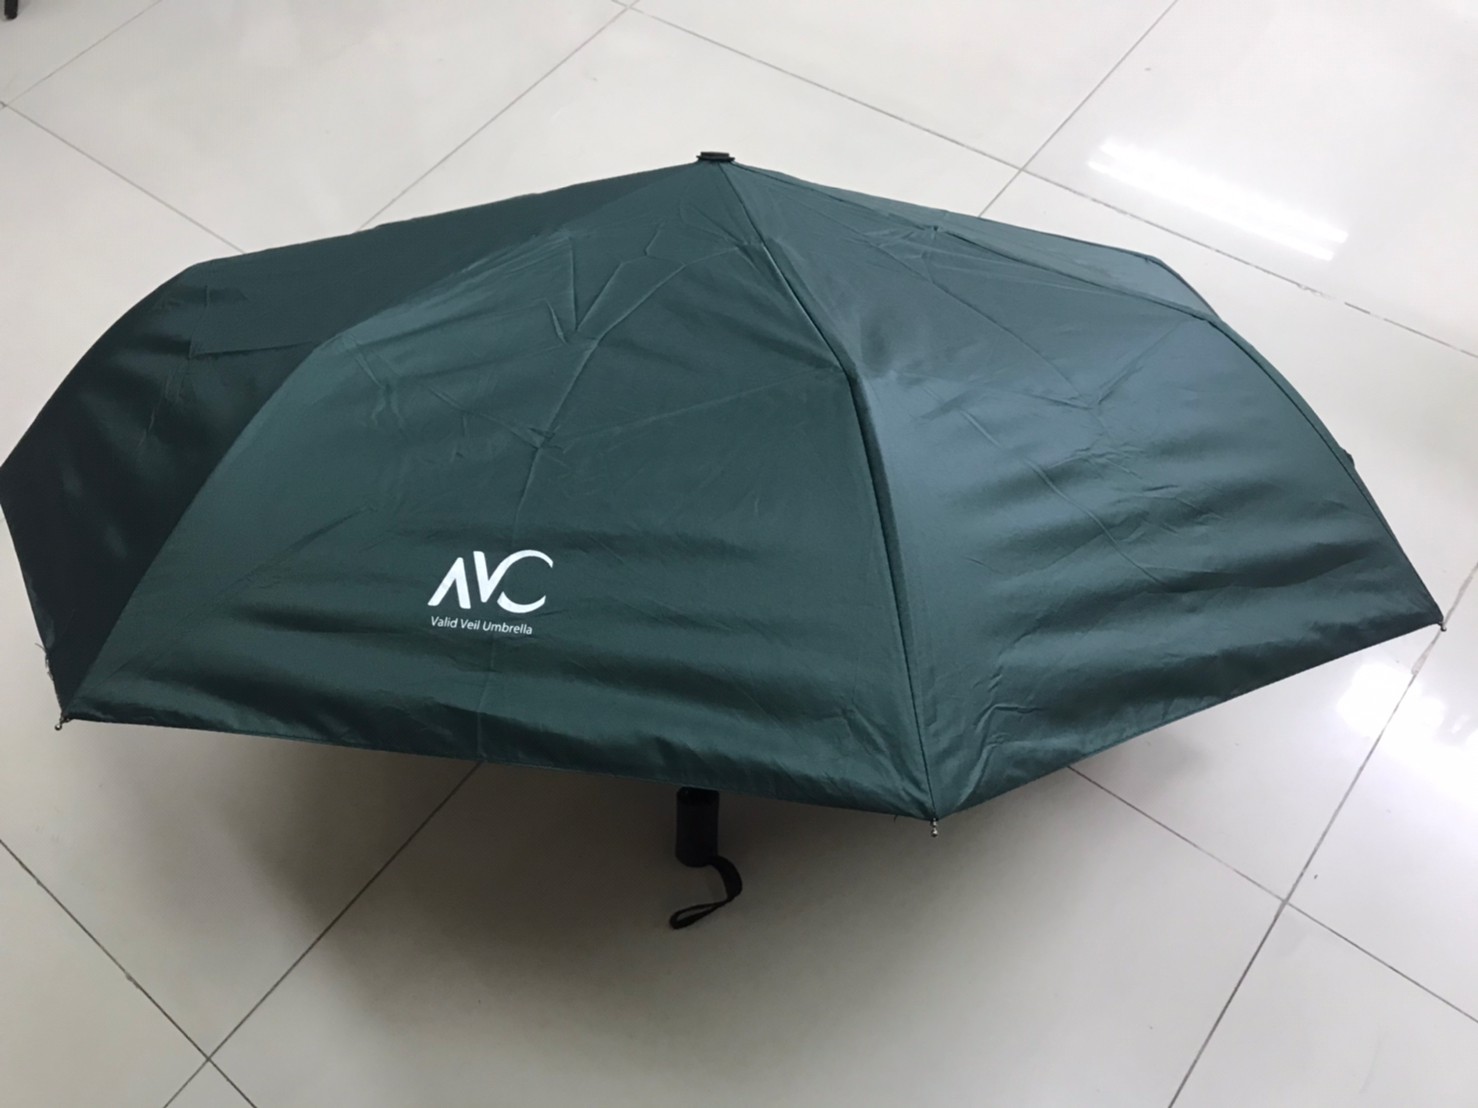 ร่มกันฝน Umbrella ร่มพับได้ ร่มแคปซูล ร่มแฟชั่น พกพาง่าย มีสีดำ  สีเขียวเข้ม สีชมพู สีขาว ขนาดของร่มยาว 26*96*65 cm. ด้ามจับมีความแข็งแรงทนทาน-VAC